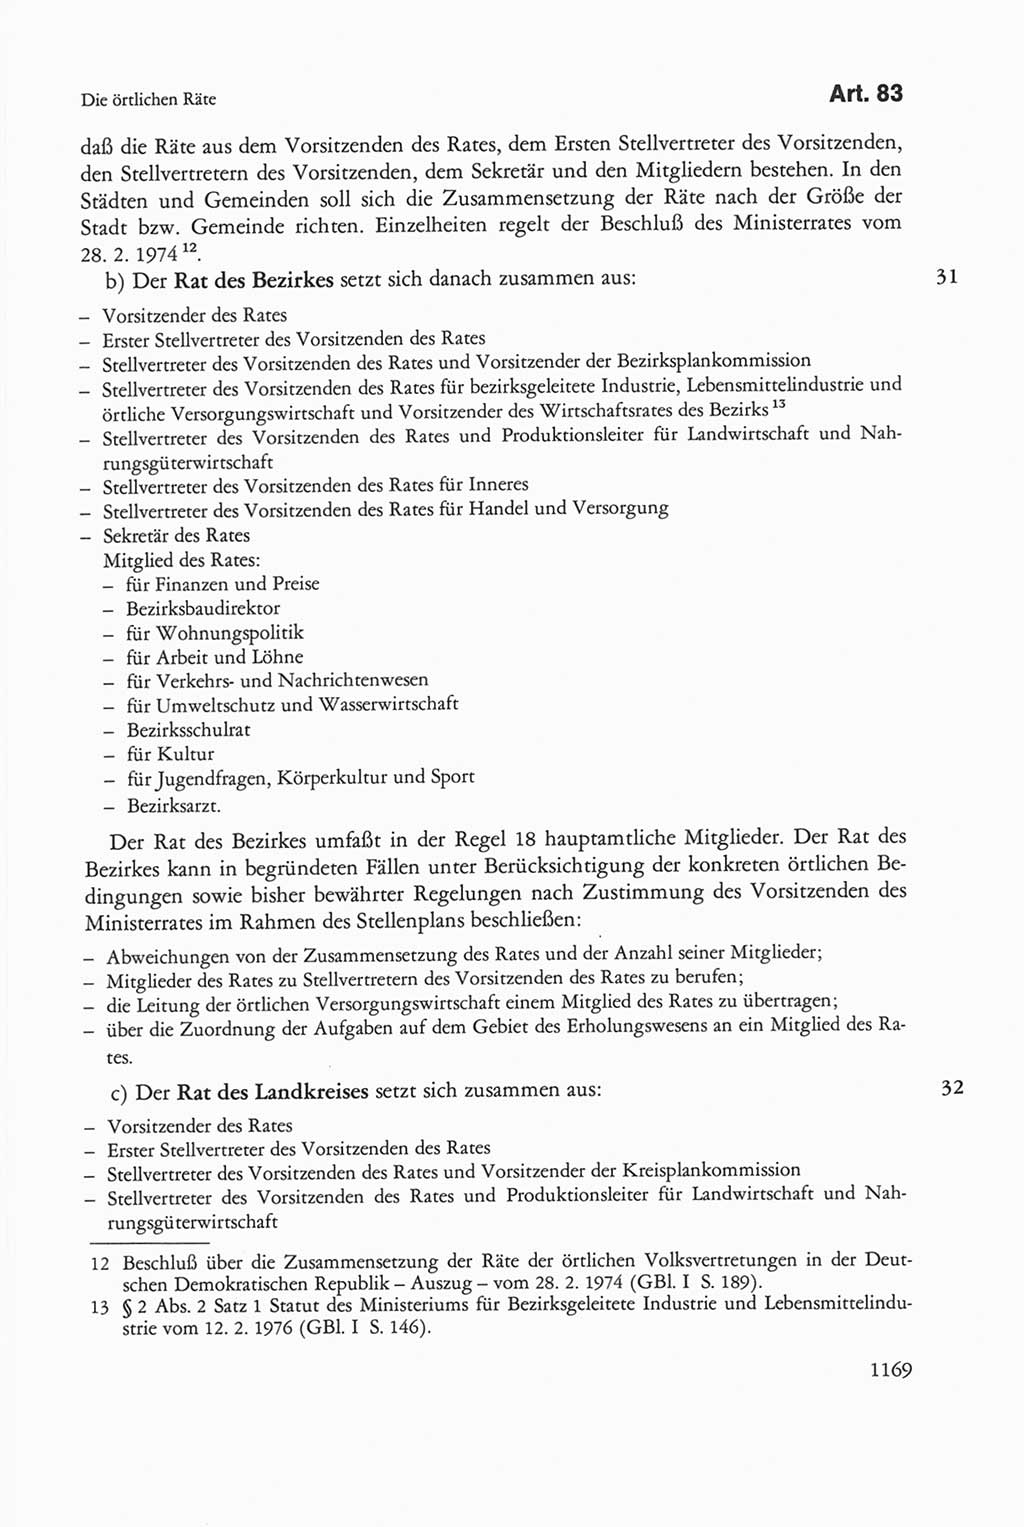 Die sozialistische Verfassung der Deutschen Demokratischen Republik (DDR), Kommentar 1982, Seite 1169 (Soz. Verf. DDR Komm. 1982, S. 1169)